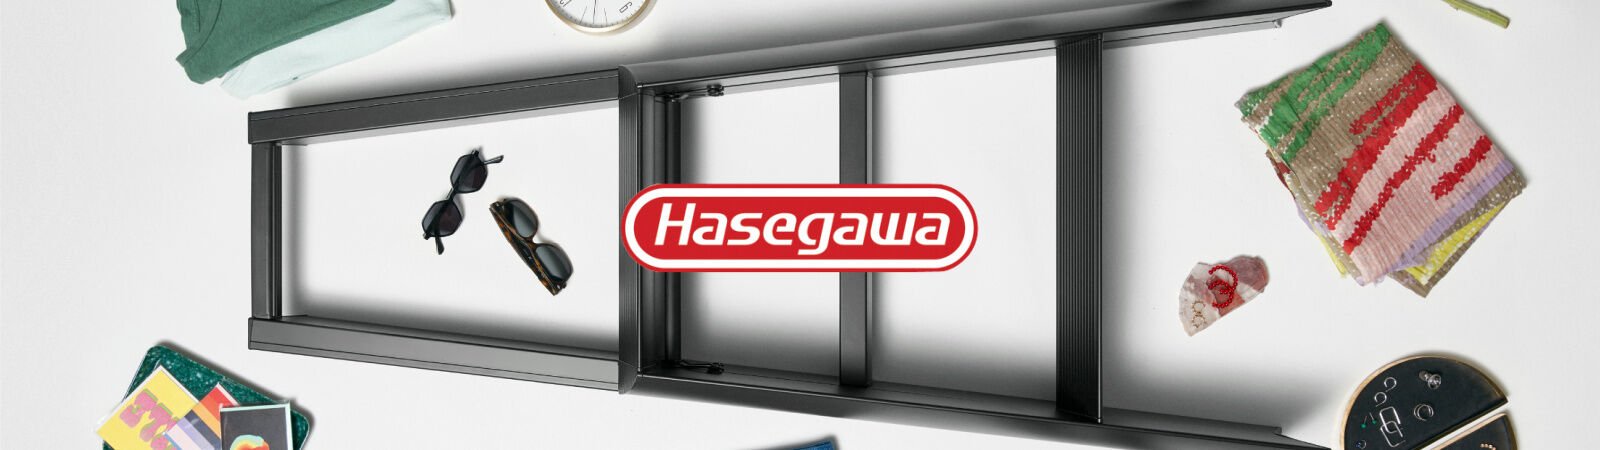 Hasegawa Ladders